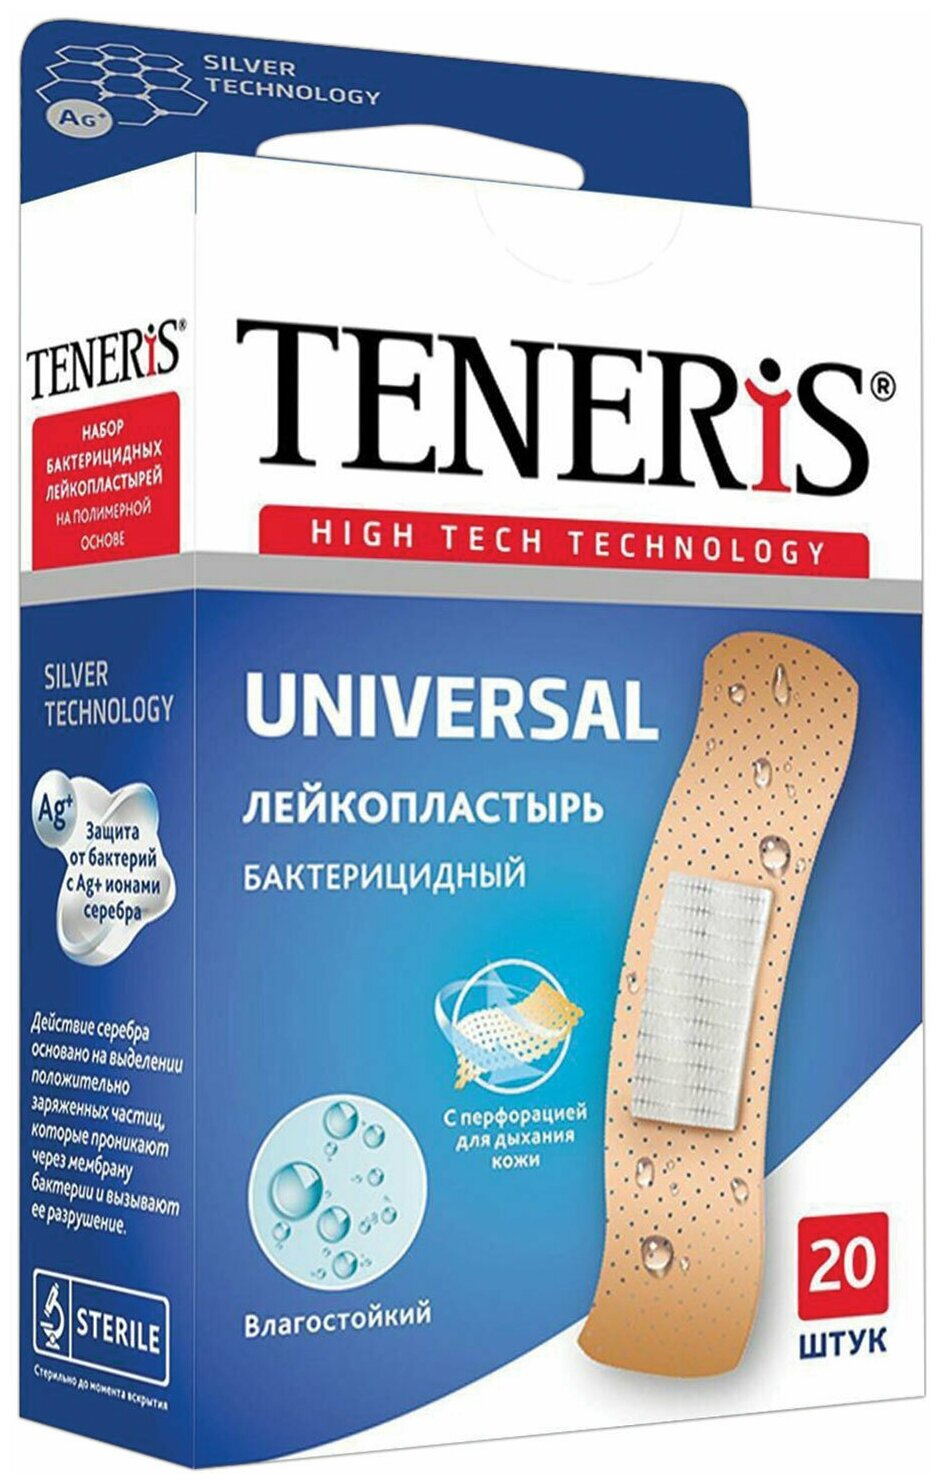 Набор пластырей TENERIS 20 шт, Universal, на полимерной основе, бактерицидный с ионами серебра